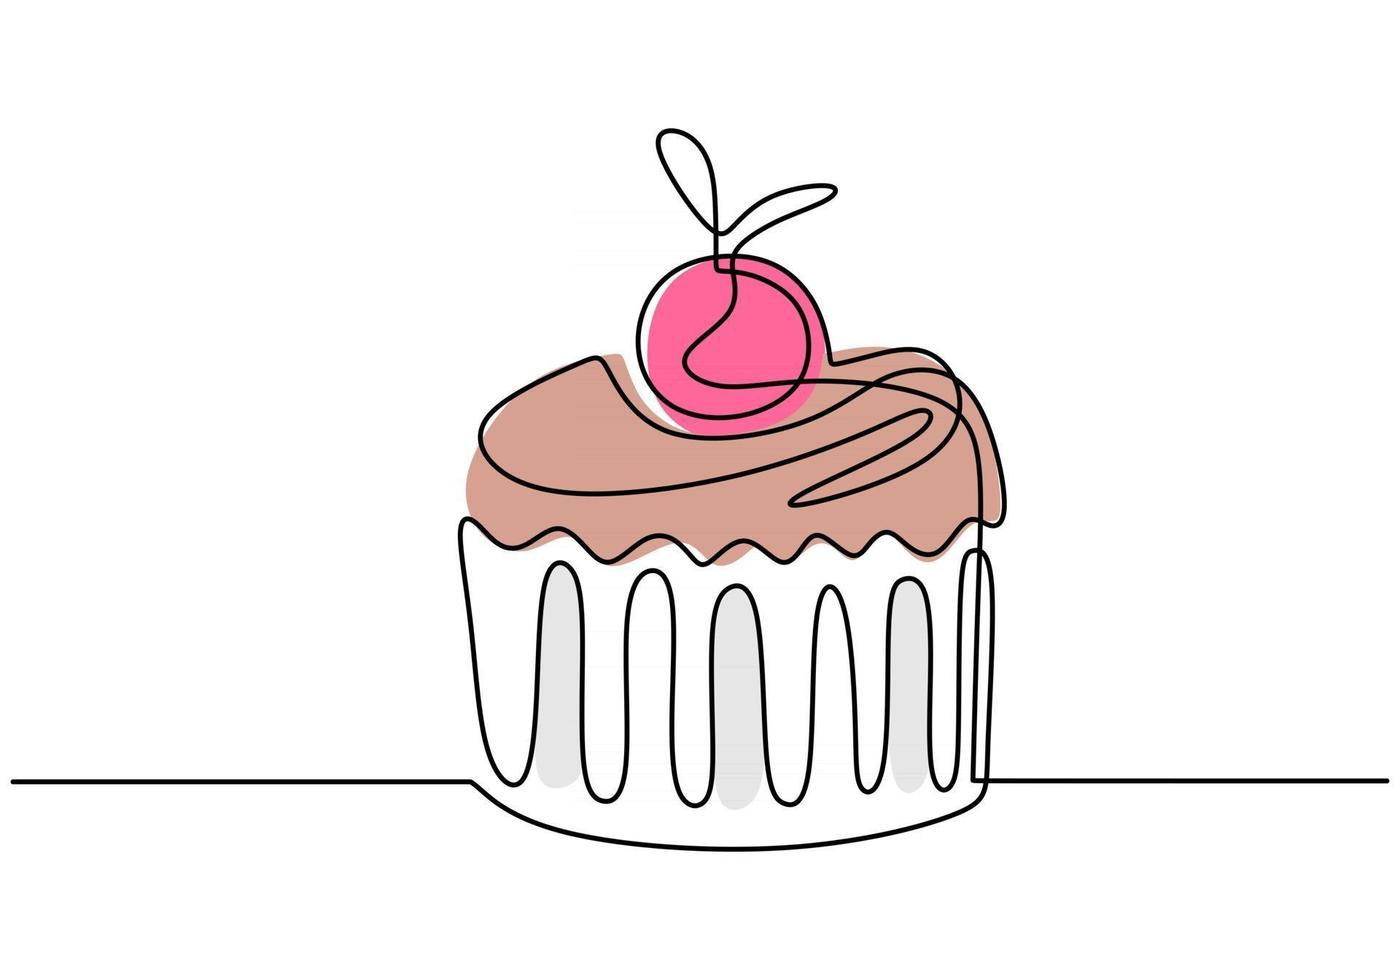 une seule ligne continue de cupcake à la cerise rose. cupcake avec restauration rapide cerise rose dans un style de ligne isolé sur fond blanc. vecteur